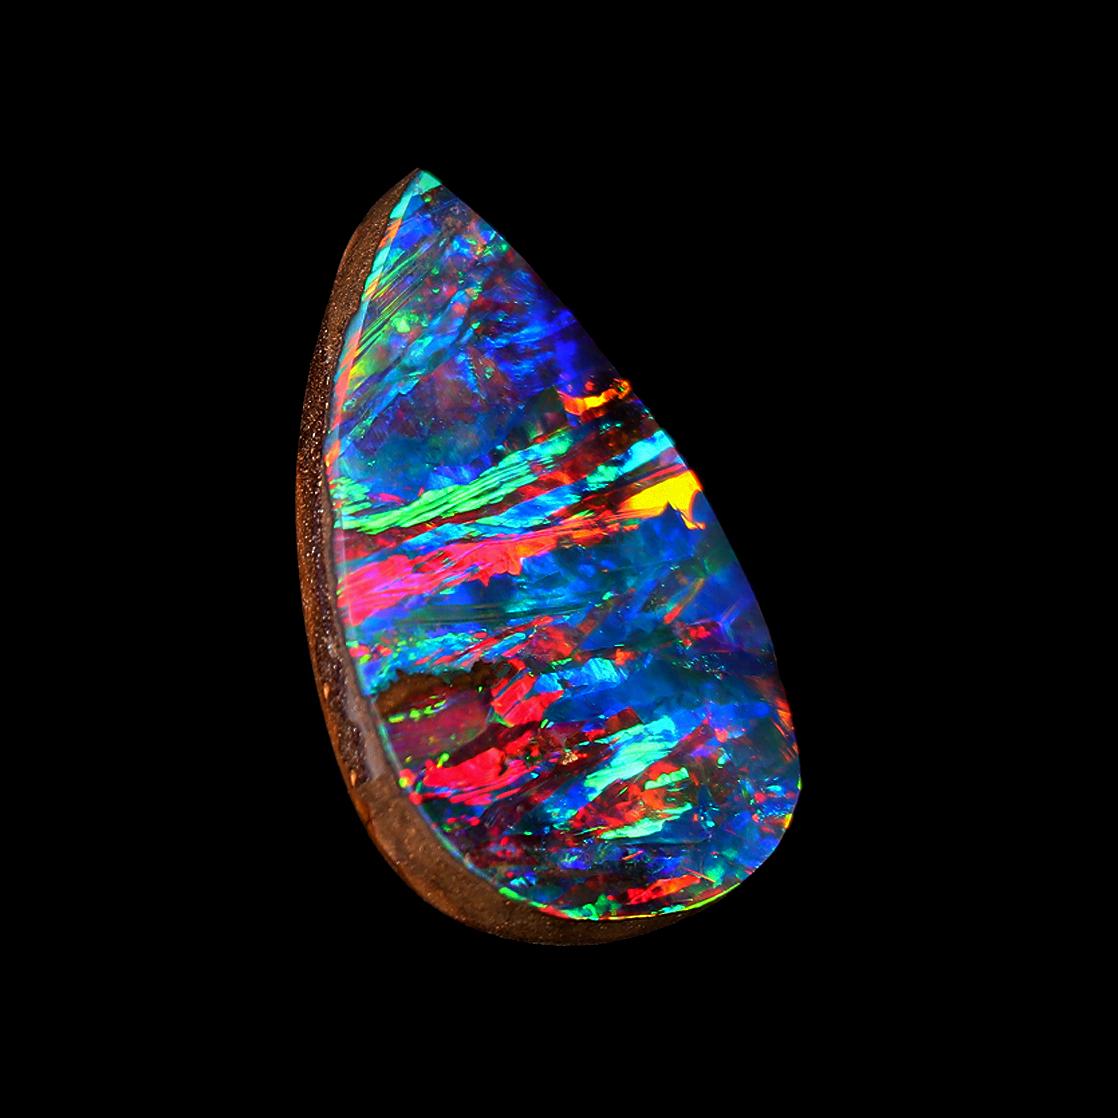 boulder opal for sale